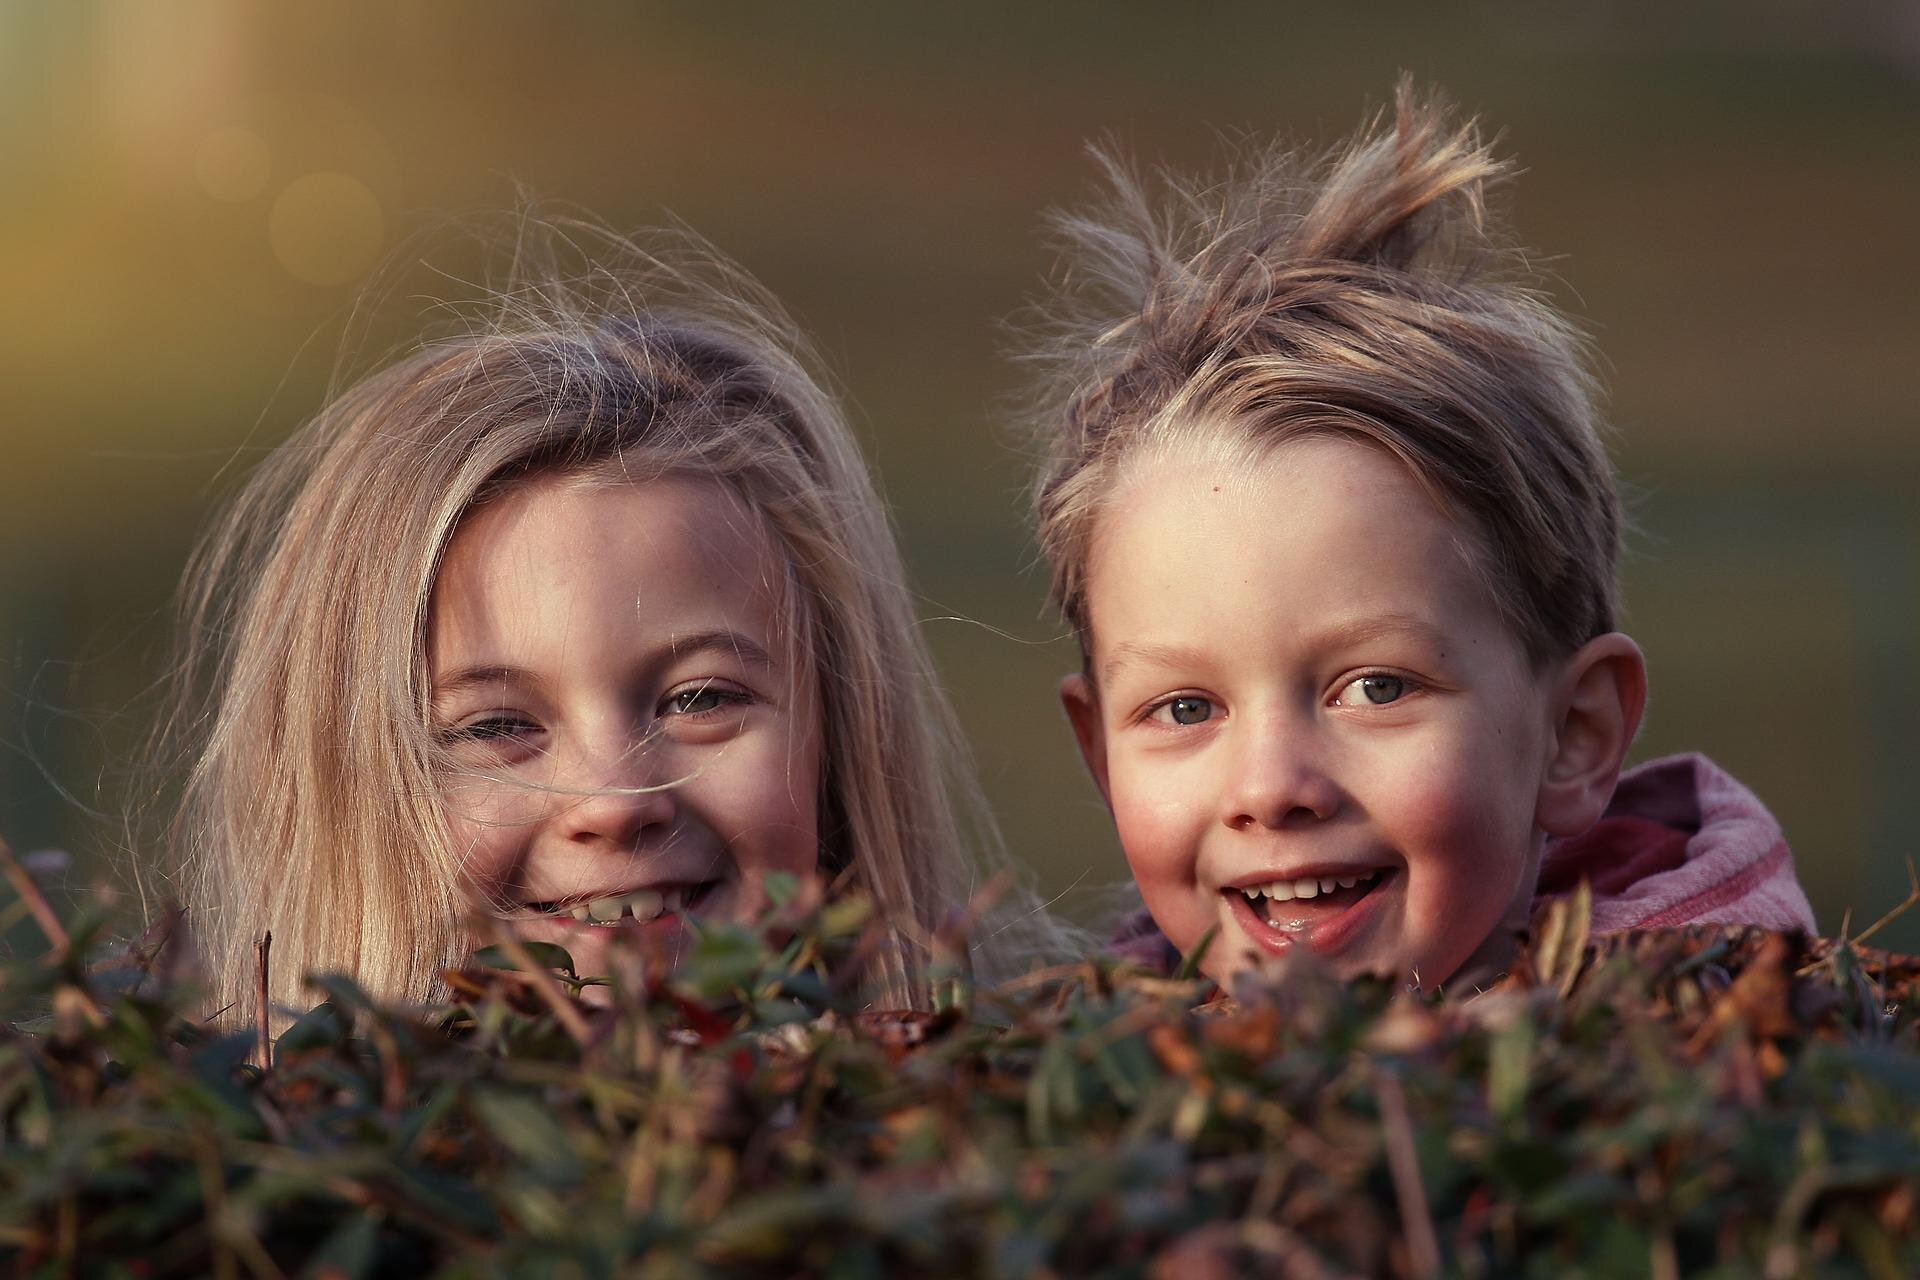 Fotografia przedstawia dwójkę uśmiechających się dzieci , dziewczynkę i chłopca. Dzieci wychylają głowy nad krzewem, mają blond, rozwiane przez wiatr włosy. 